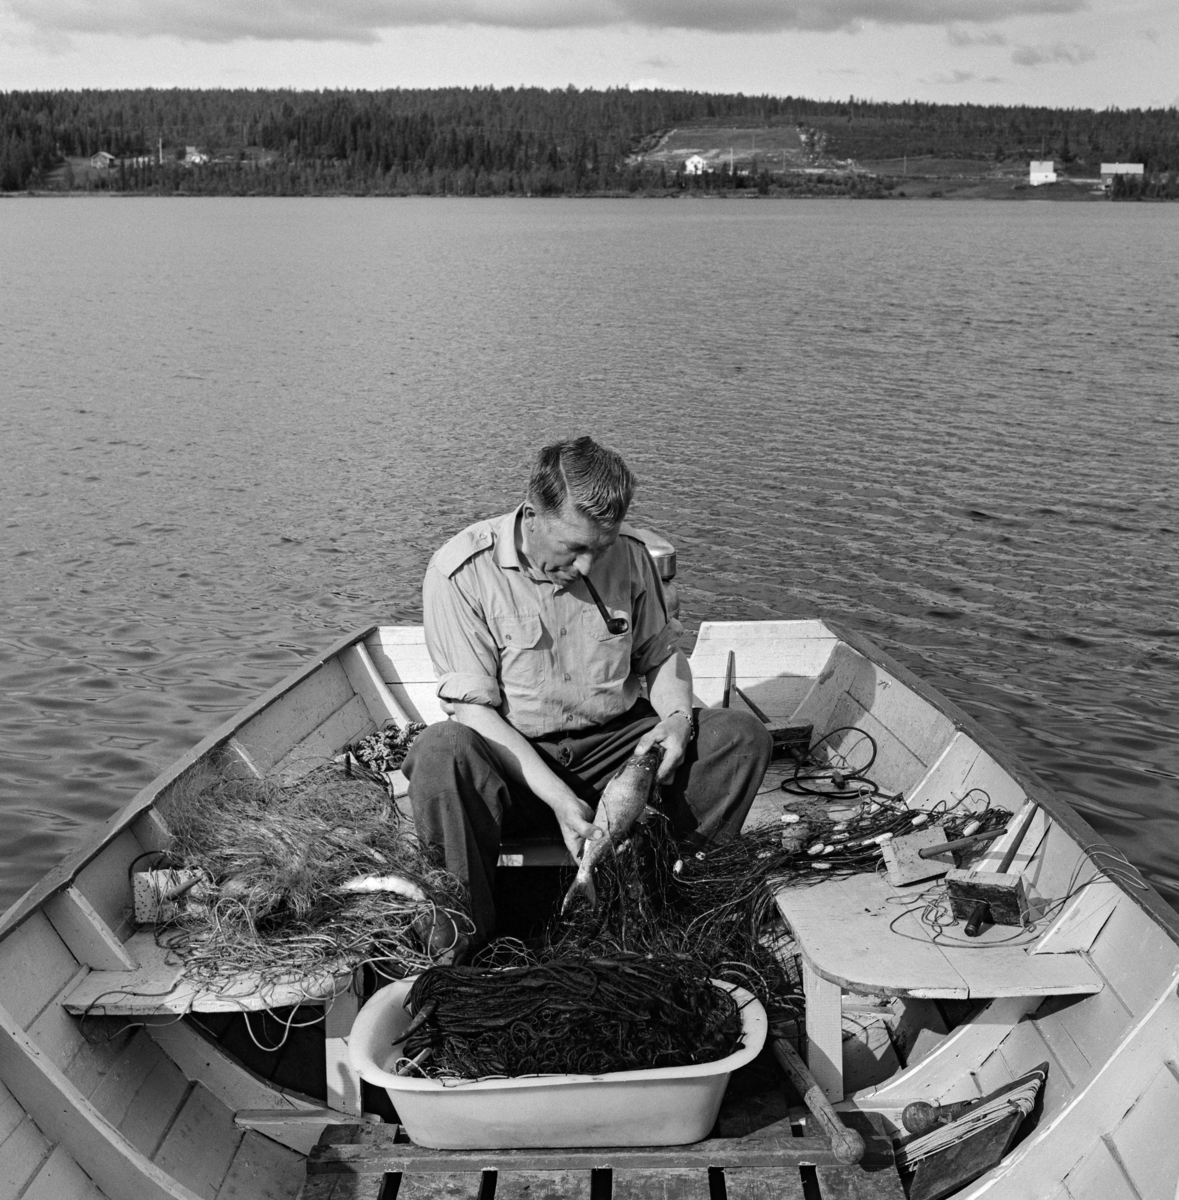 Per Lilleholm (1911-1999) fra Nordre Osen i Åmot kommune i Hedmark, fotografert i båten sin under garnfiske i Osensjøen.  Da dette fotografiet ble tatt satt Lilleholm på ei tofte akterut i båten sin og tok fisk ut av et garn som han la i ei plastbalje som sto på tiljene (golvdekningen) i småbåten av tre som han fisket fra.  Lilleholm var kledd i mørke bukser og ei lys skjorte med oppbrettete armer.  Han hadde tobakkspipa i munnen mens han trakk en forholdsvis stor sik ut av garnet.  I bakgrunnen ser vi det typiske skoglandskapet rundt Osensjøen, med et par gardsbruk i sonen ned mot vatnet. 